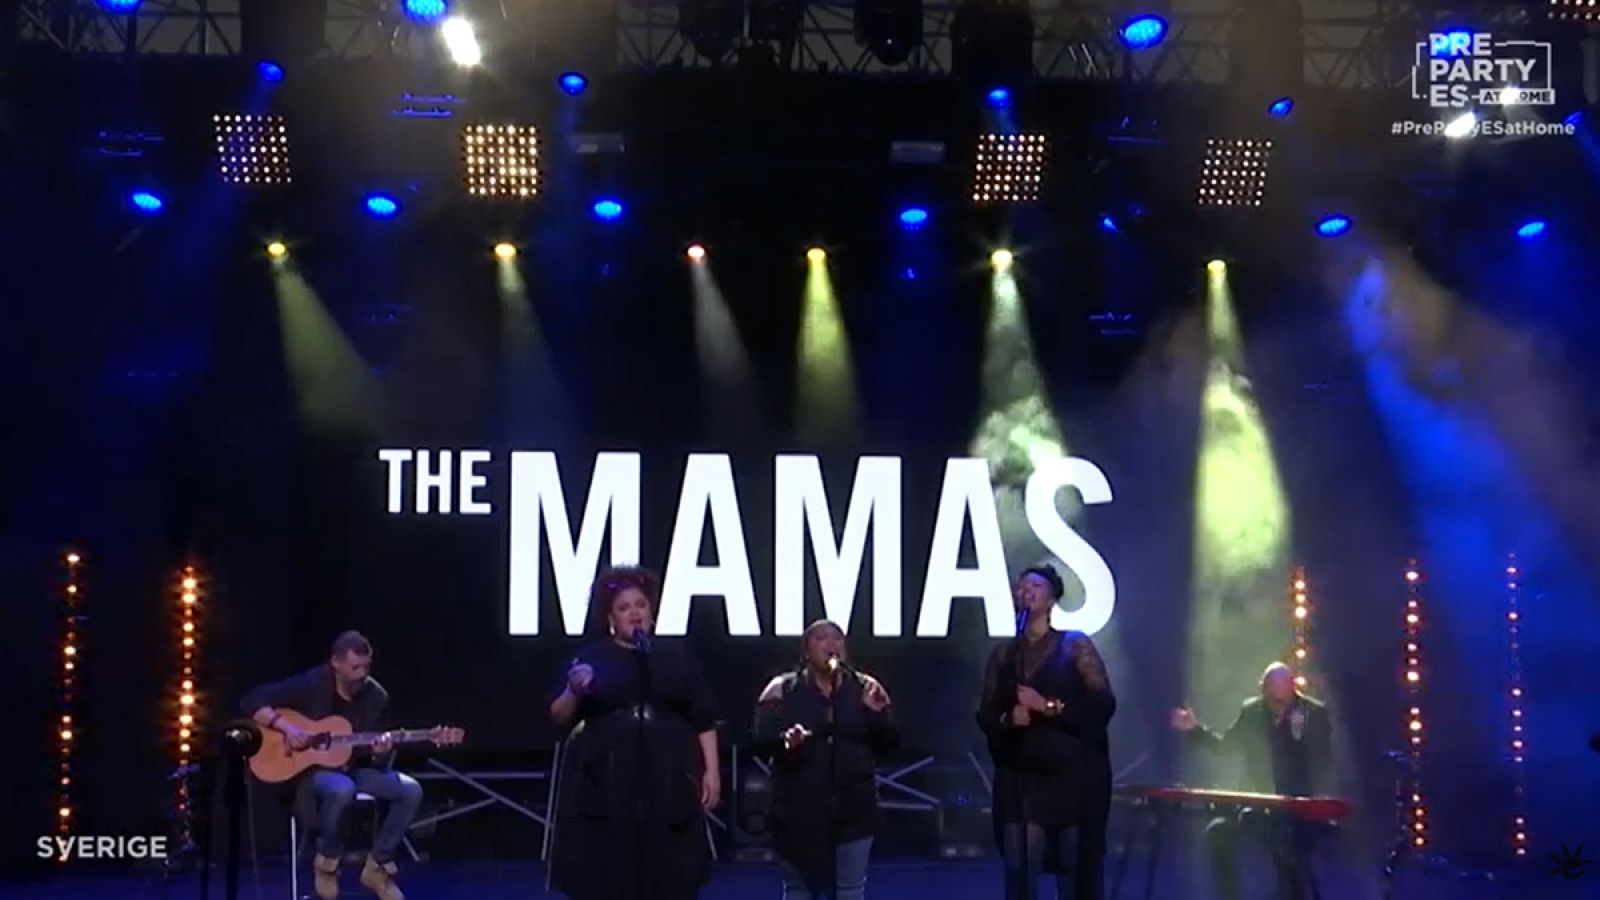 The Mamas (Suecia 2020), en la PrePartyES at home.